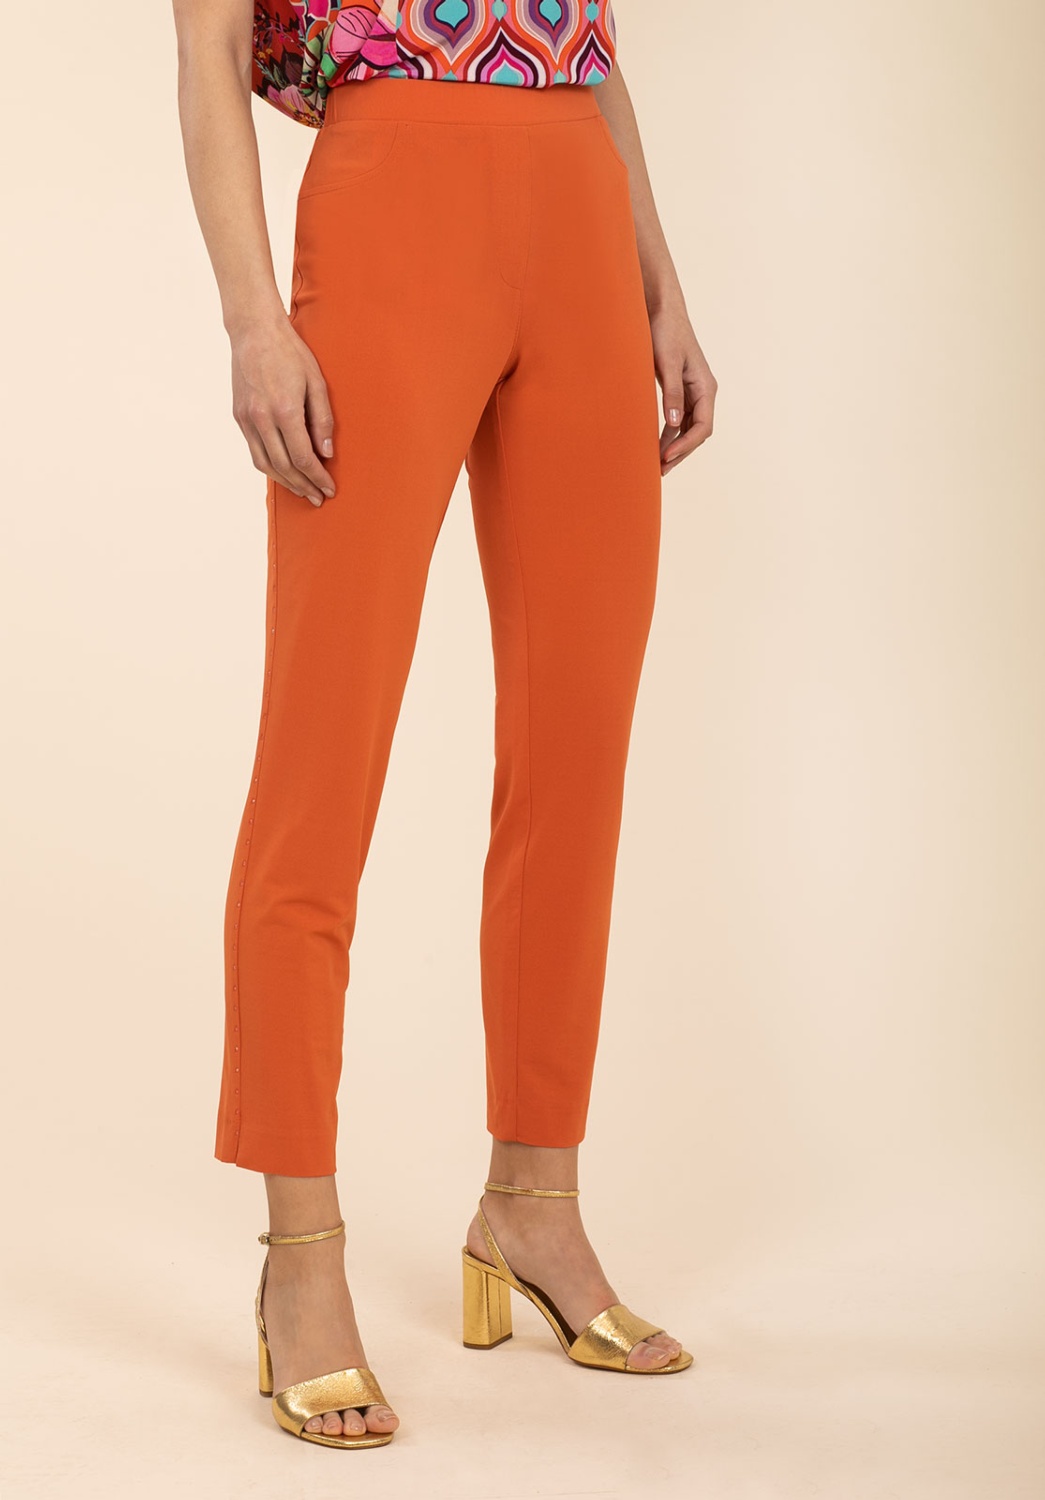 Orange Trousers With Rhinestones 1